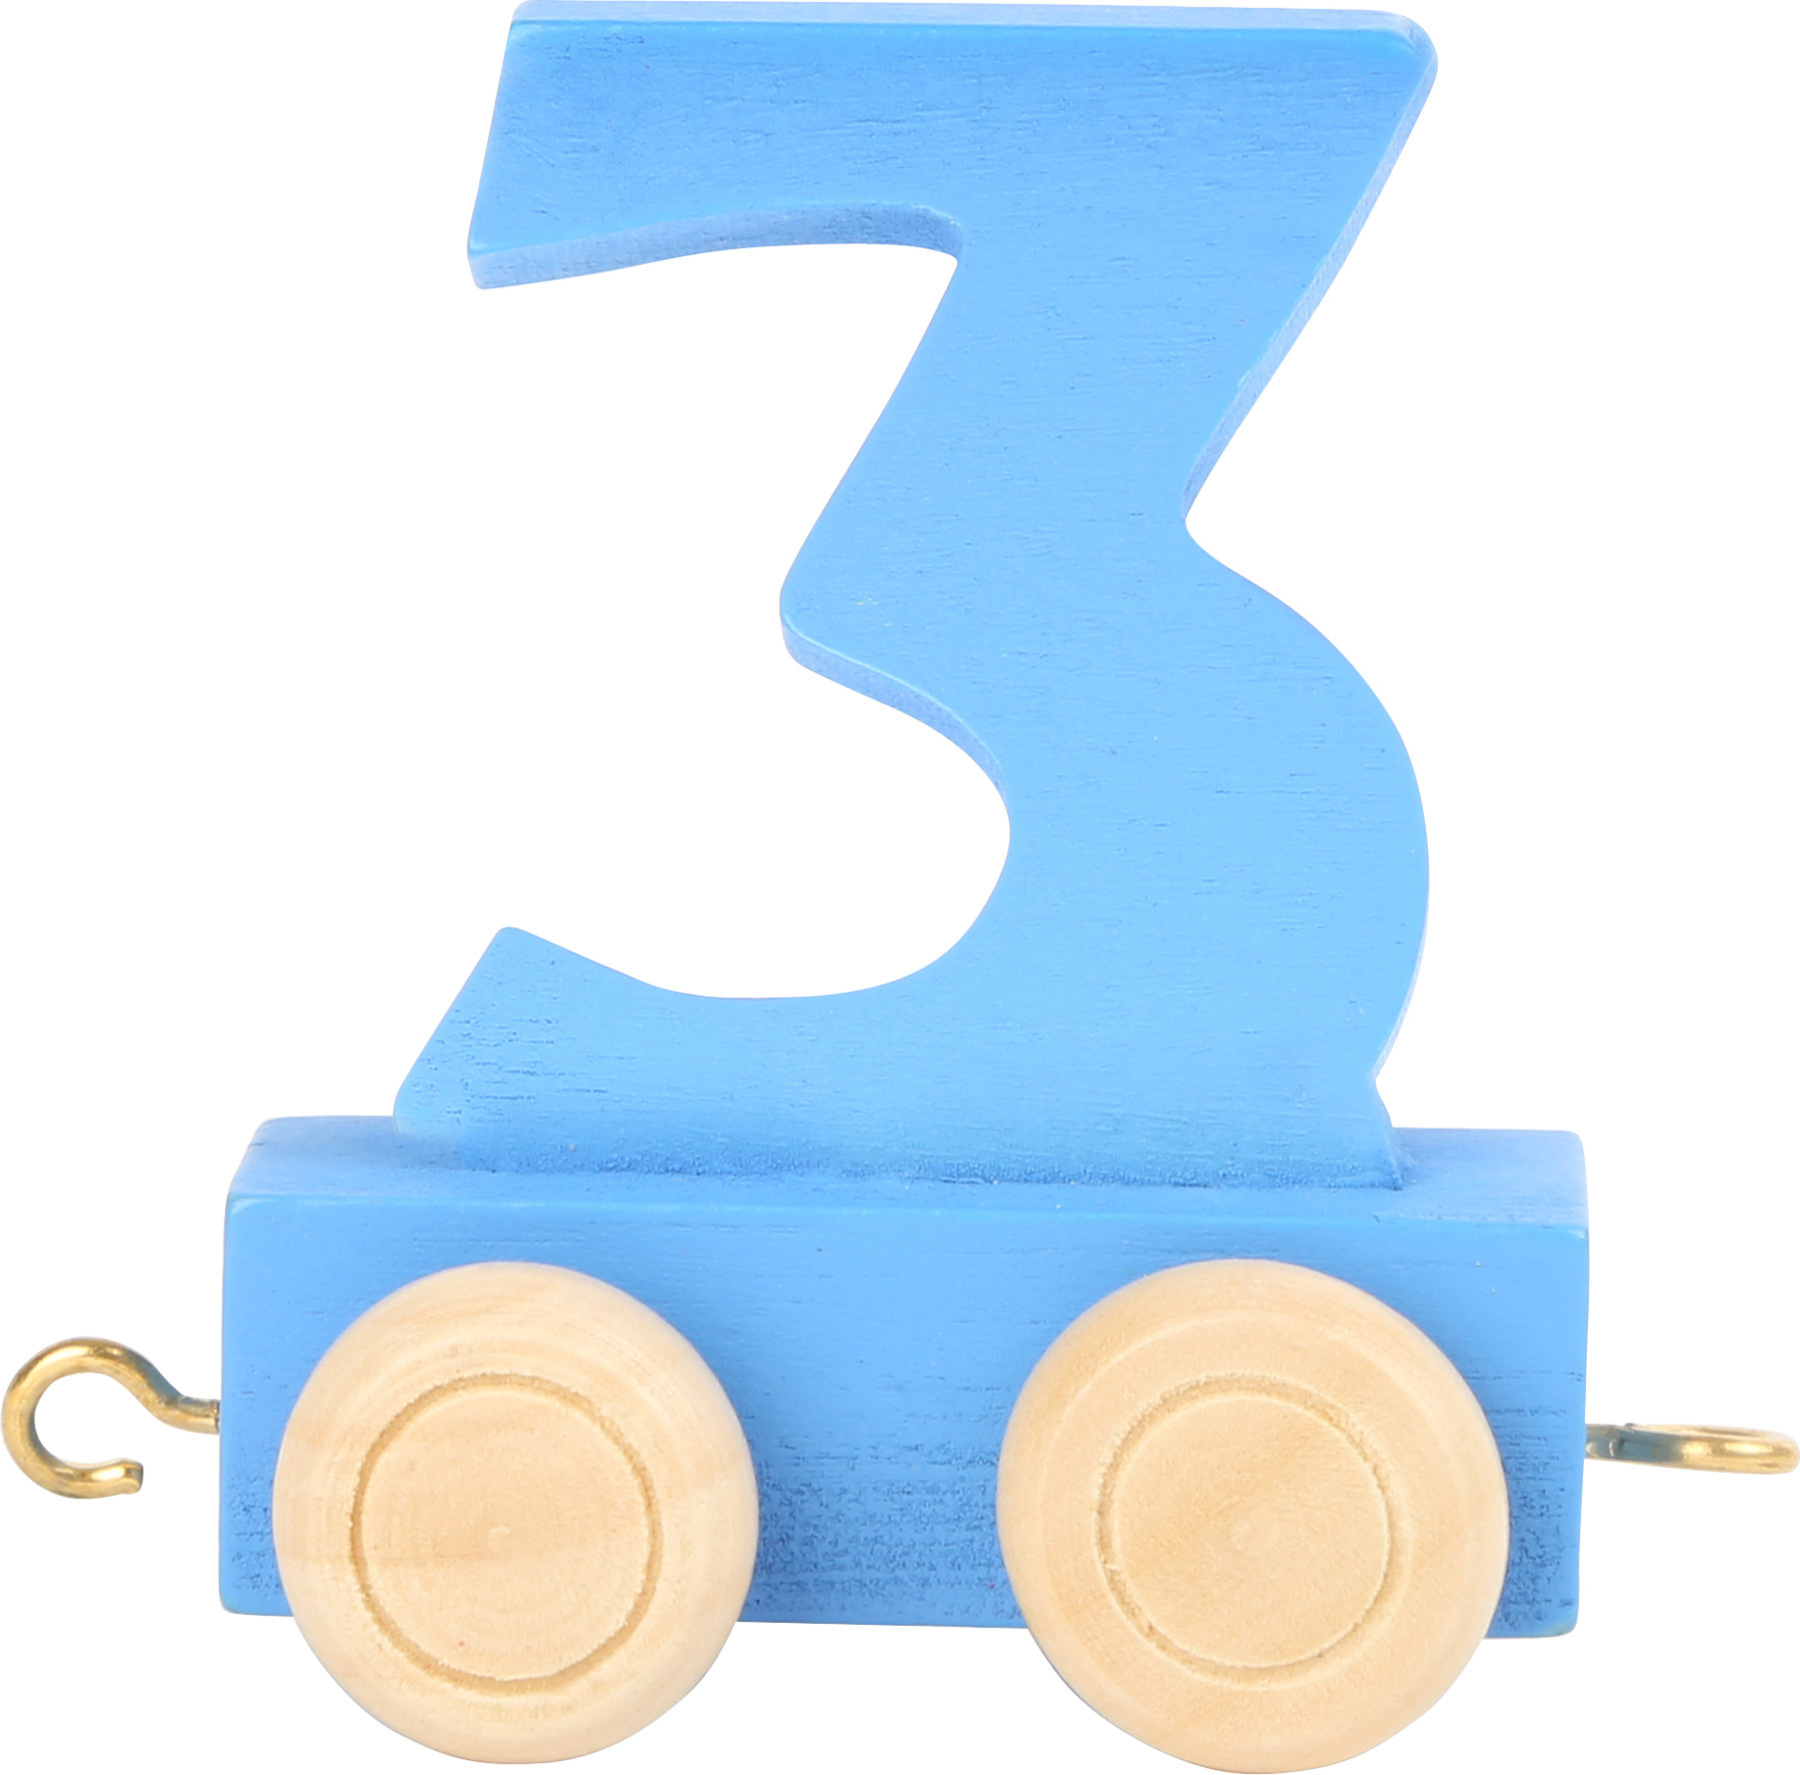 Vagónik dřevěné vláčkodráhy - barevné číslice - číslo 3